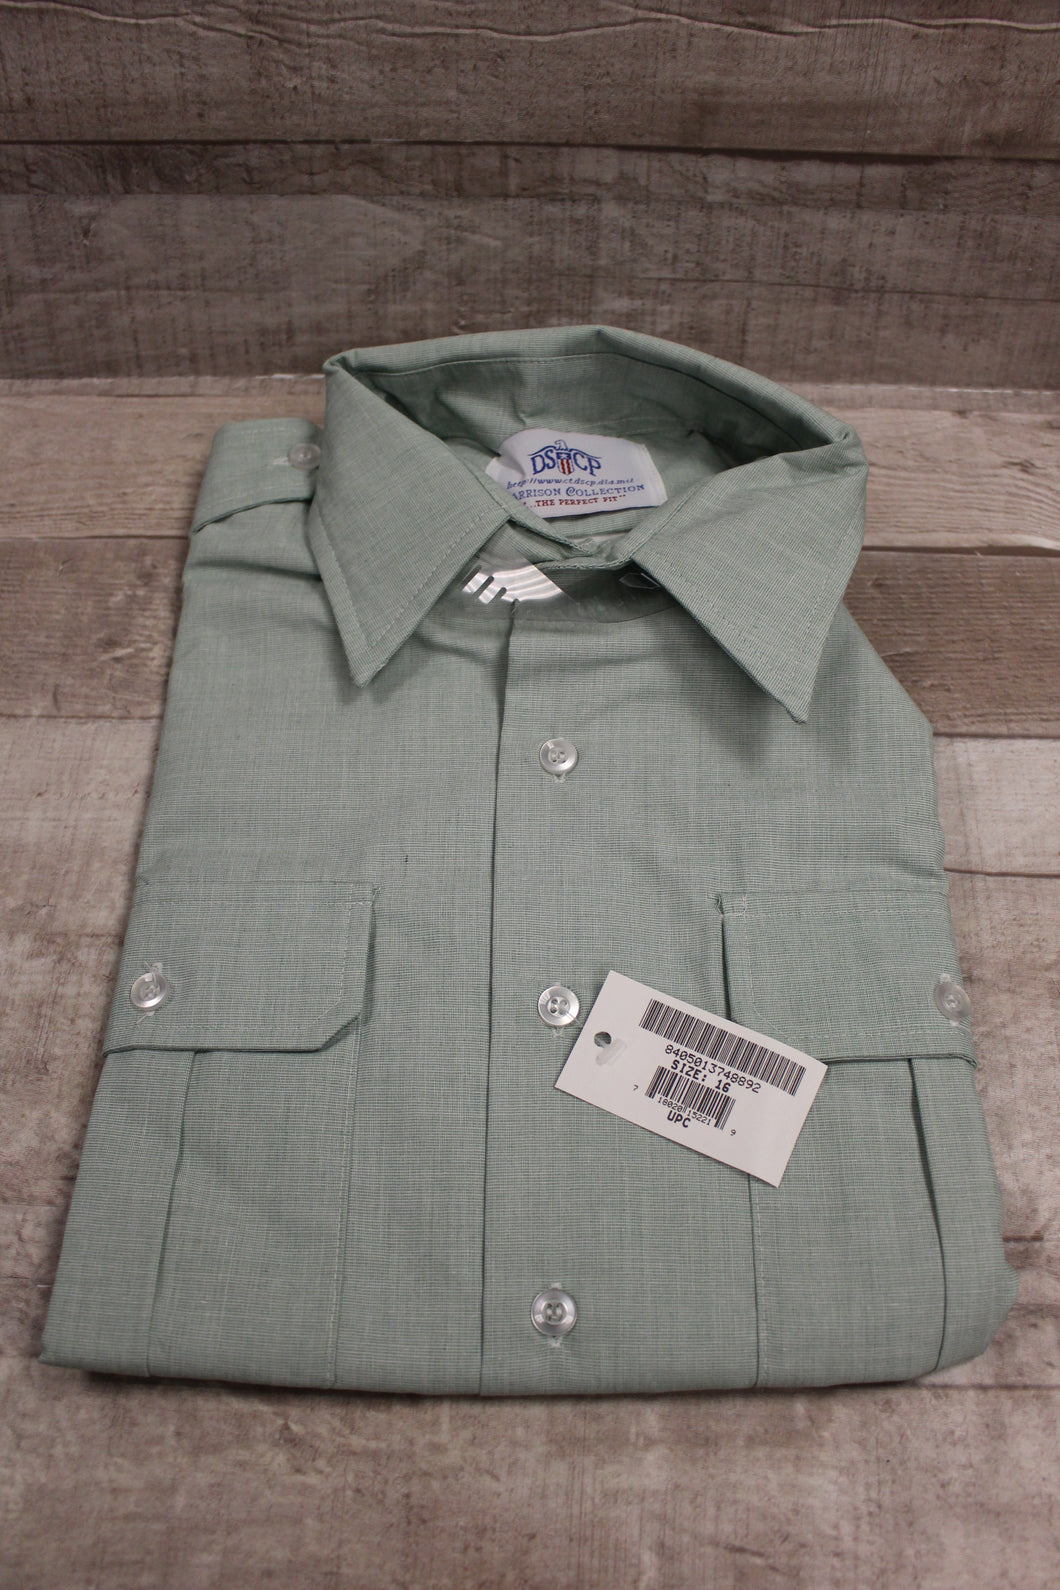 Army DSCP Men’s Short Sleeve Green Dress Shirt - 8405-01-374-8892 - Size 16 -New